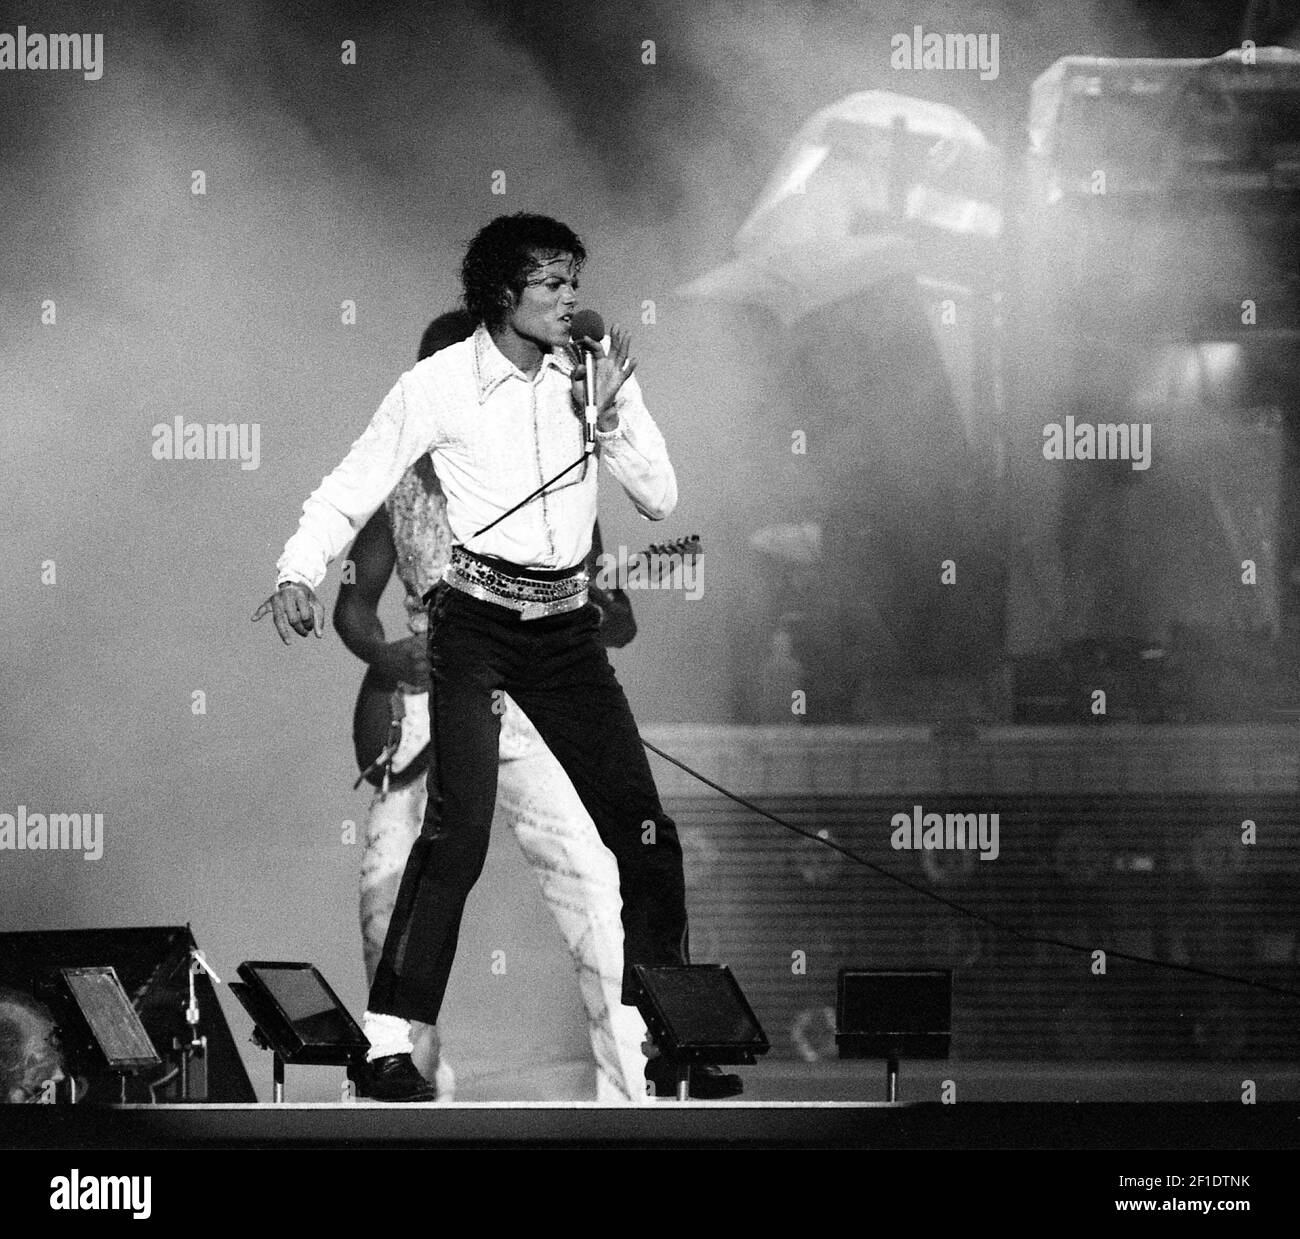 10 de agosto de 1984; Knoxville, TN, EE.UU.; Michael Jackson interpreta algunos de sus éxitos de su álbum 'Thriller', el álbum más vendido de la historia, durante el 'Victory Tour' de The Jacksons en Knoxville, Tennessee, 10 de agosto de 1984.crédito obligatorio: Ricky Rogers / The Tennessean via USA TODAY NETWORK/Sipa USA Foto de stock